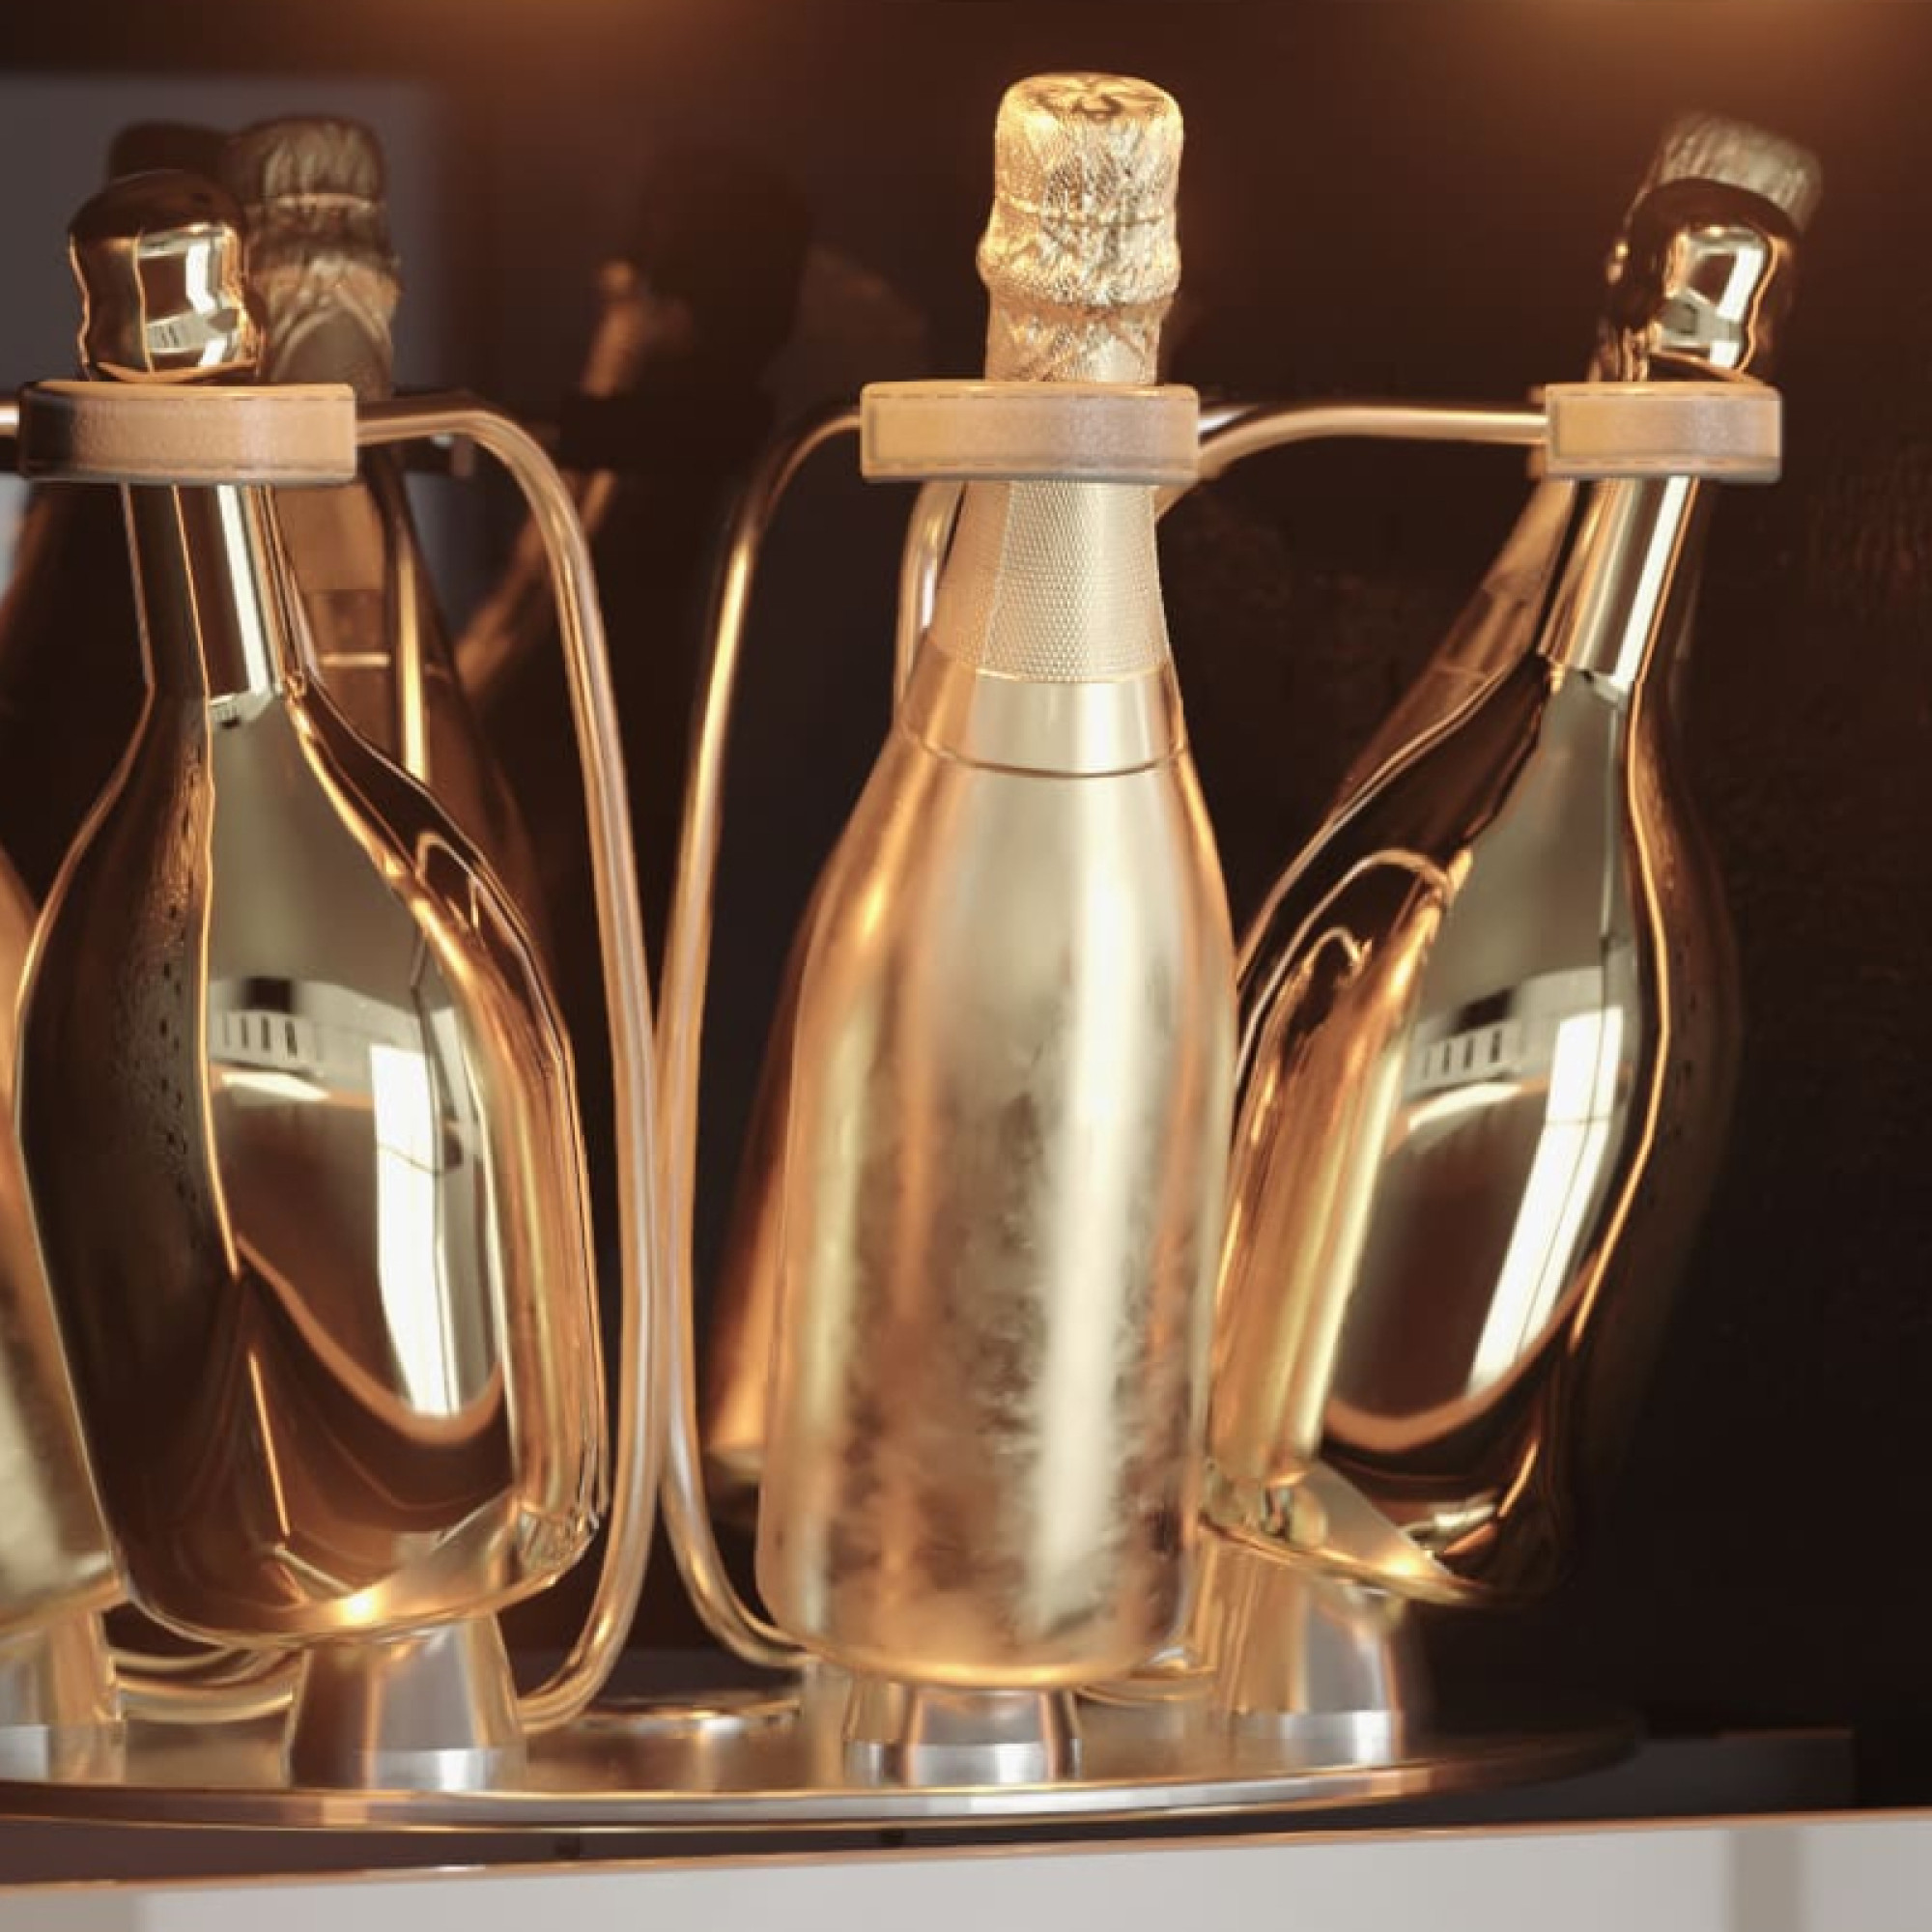 Elegante Linien, luxuriöse Oberflächen mit schillerndem Lederbezug und einer goldfarbenen Front, die ultimative Raffinesse des Eurocave-Champagnerkellers.